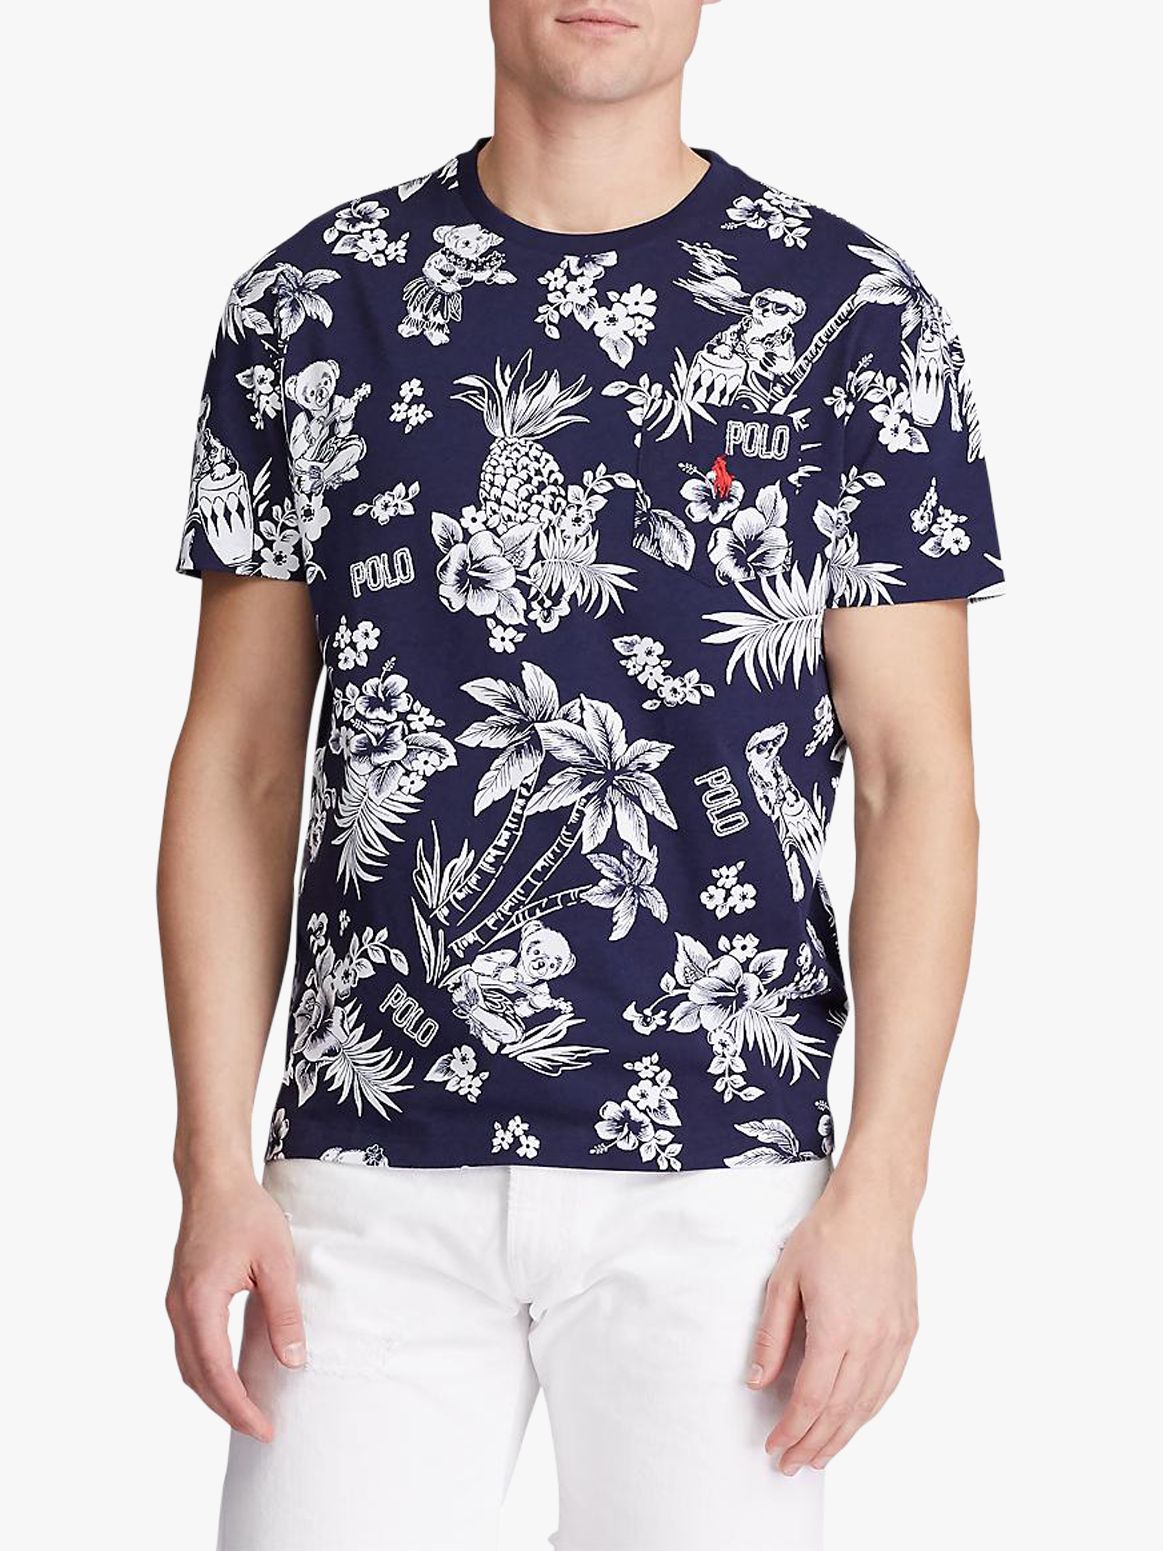 ralph lauren tropical t shirt